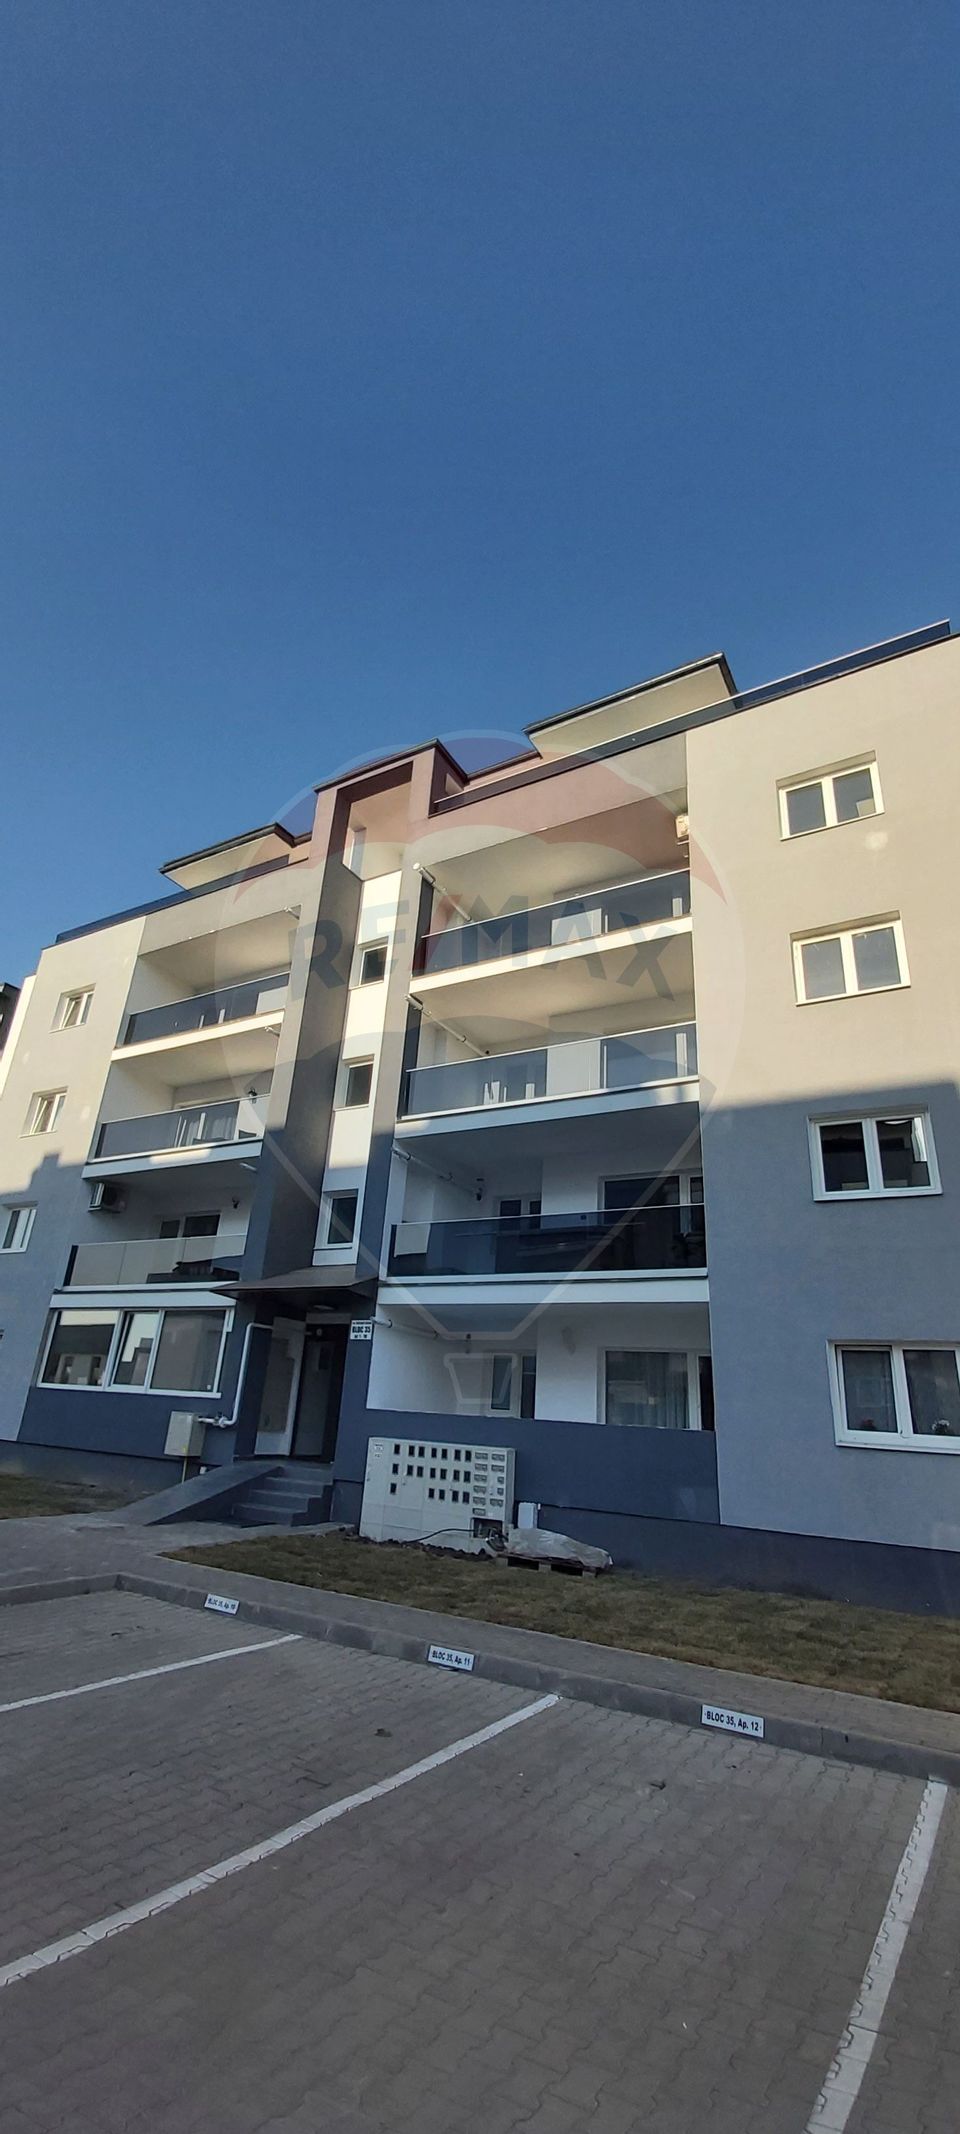 3 room Apartment for rent, Piata Cluj area